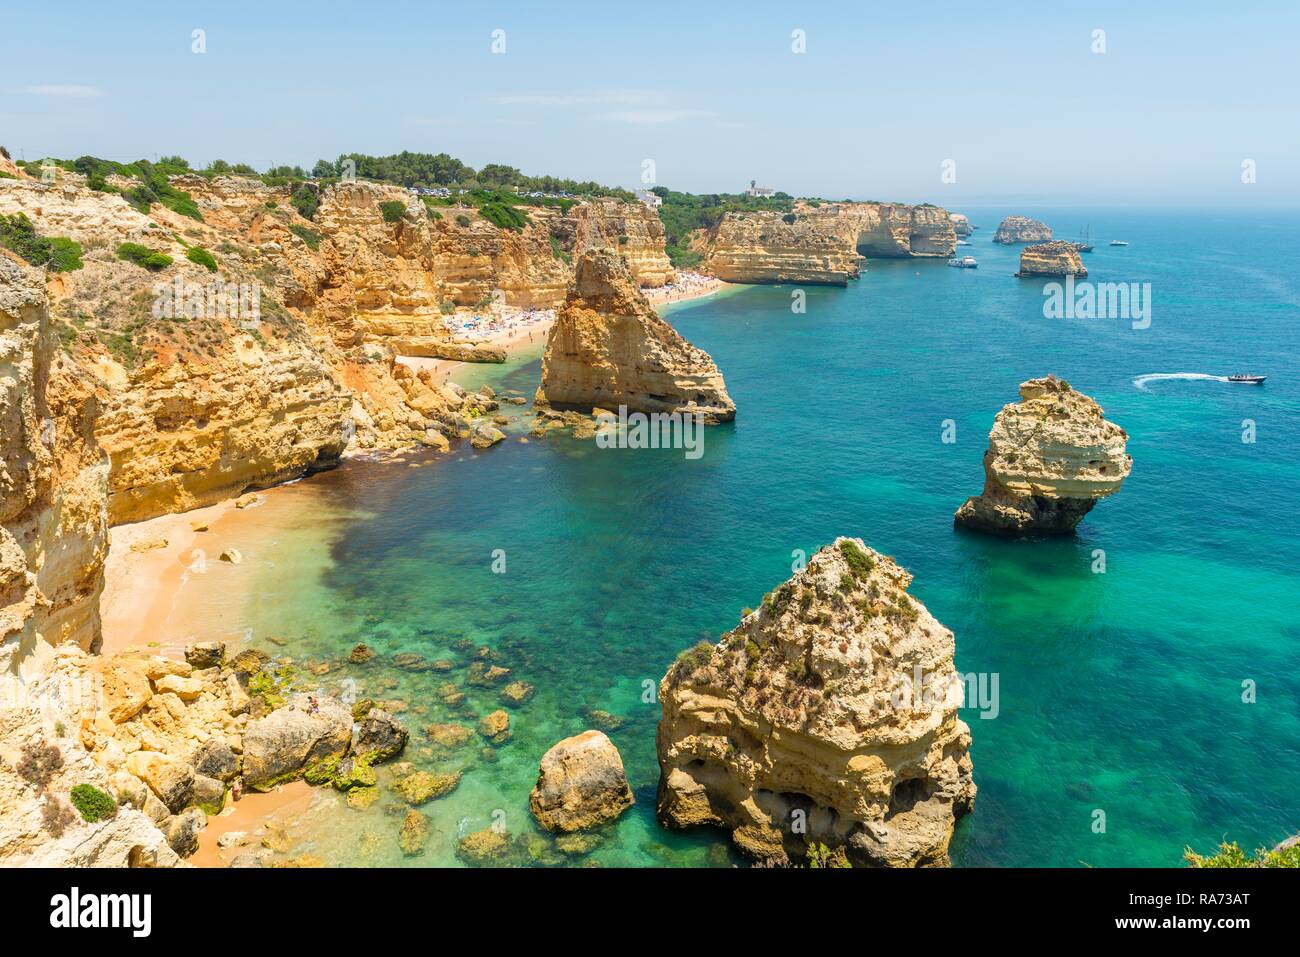 Türkisblaues Meer, Praia da Marinha, Schroffe Felsenküste von Sandstein, Felsformationen im Meer, Algarve, Lagos, Portugal Stockfoto